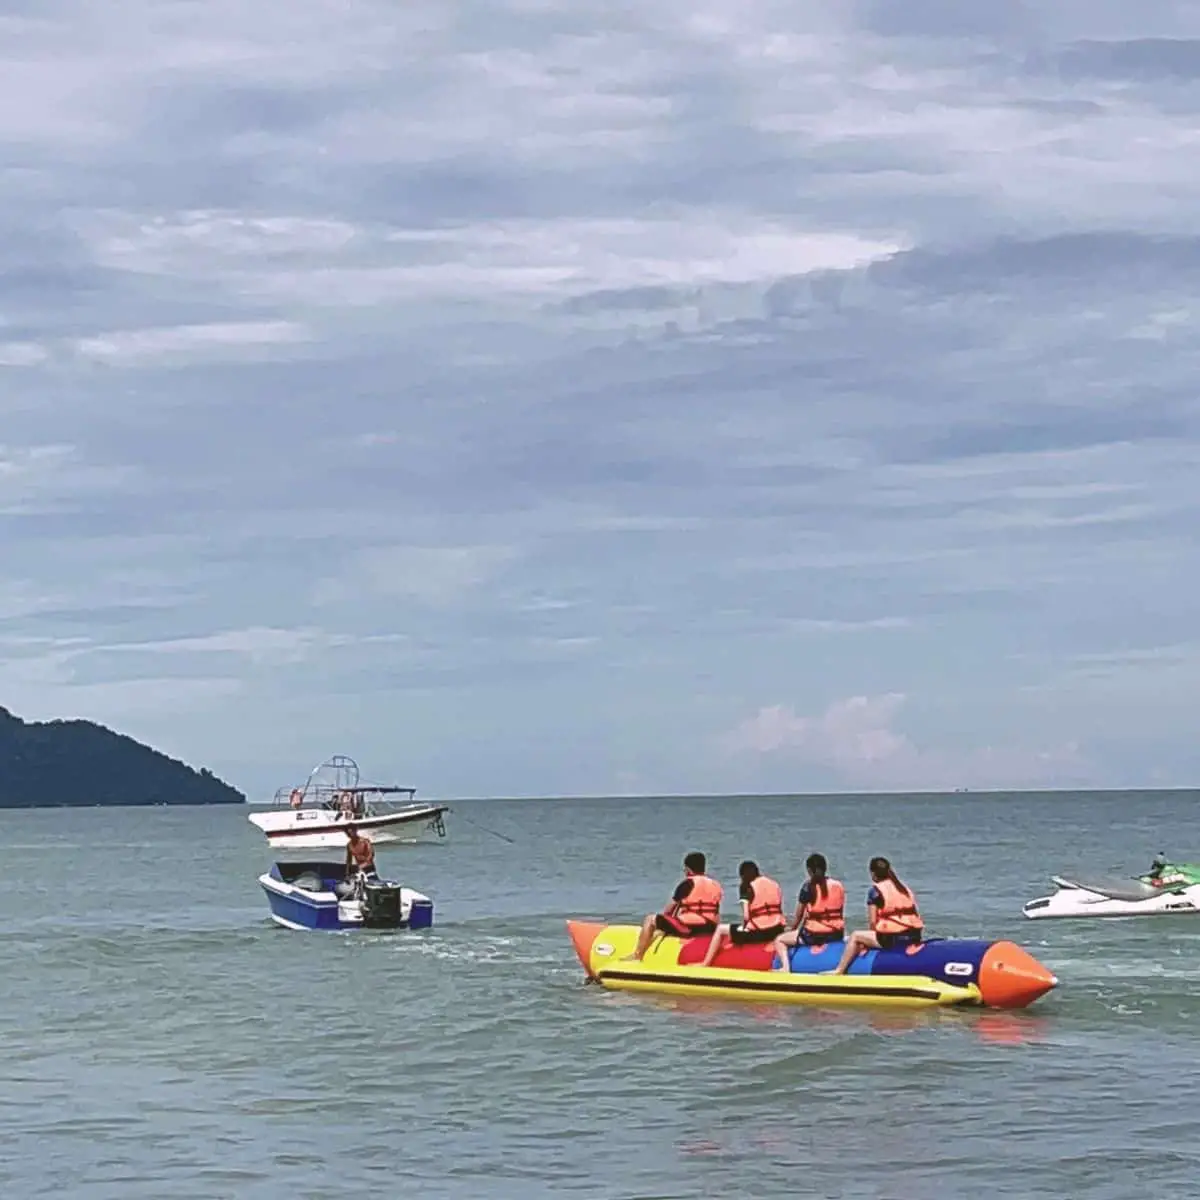 Banana boat ride near Batu Feringghi seashore